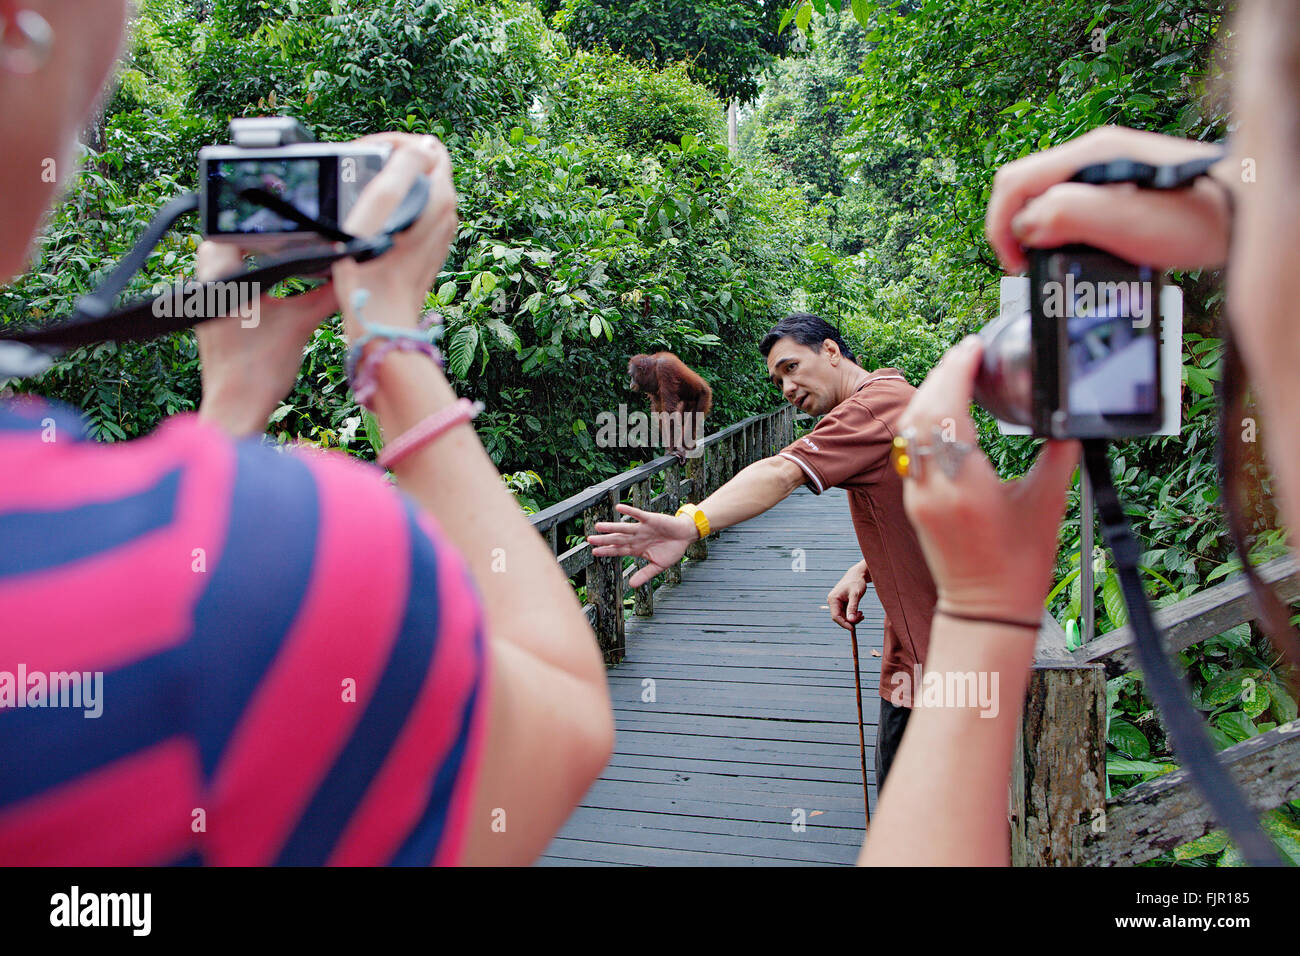 Tourist group watching an orangutan at Sepilok Orangutan Rehabilitation Centre. Sabah, Borneo. Stock Photo